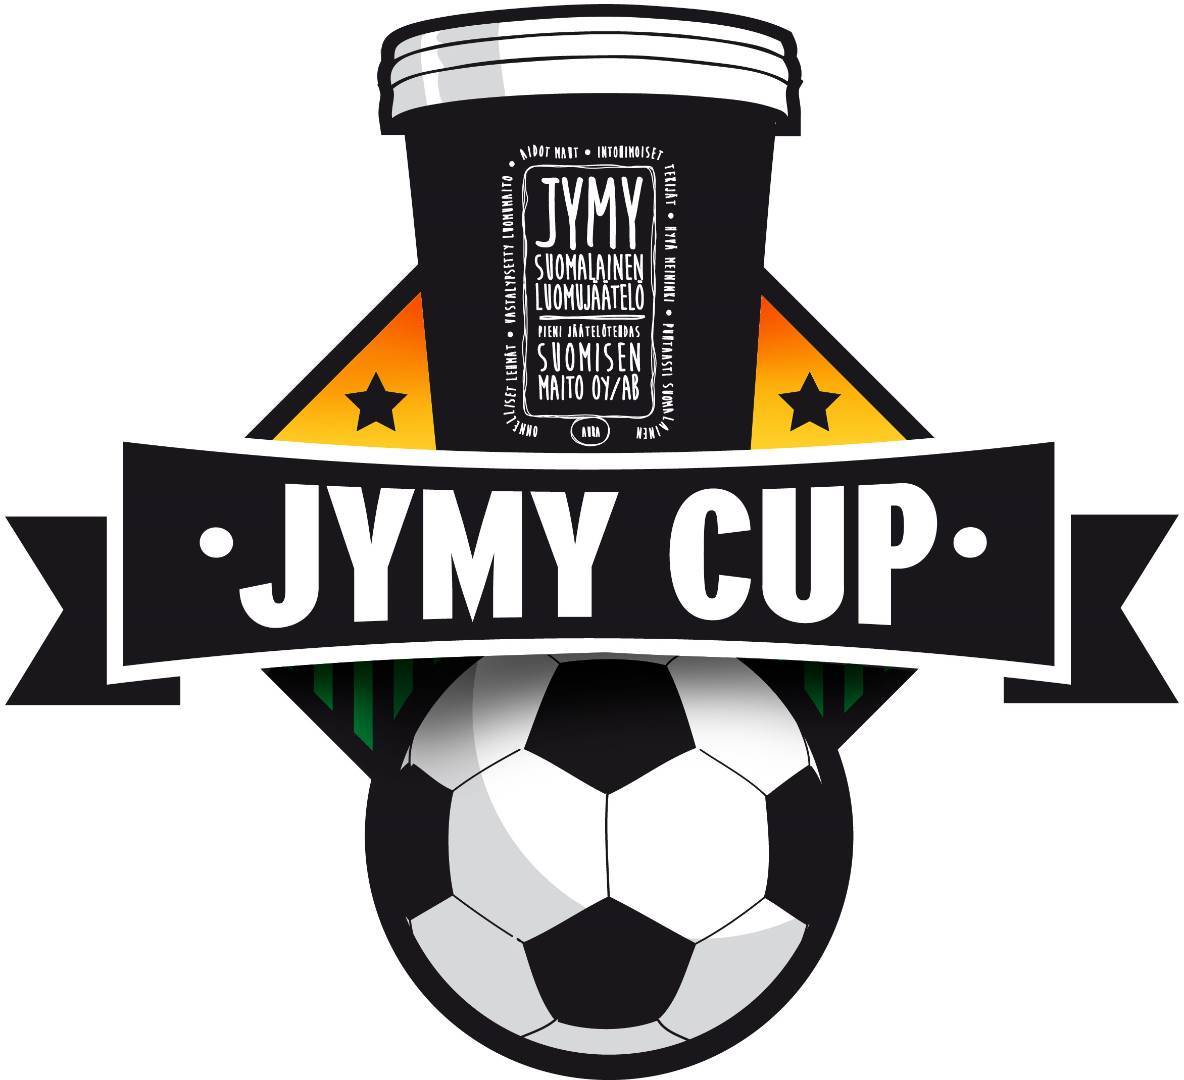 Jymy Cup avaa oven myös 2013 syntyneille joukkueille!